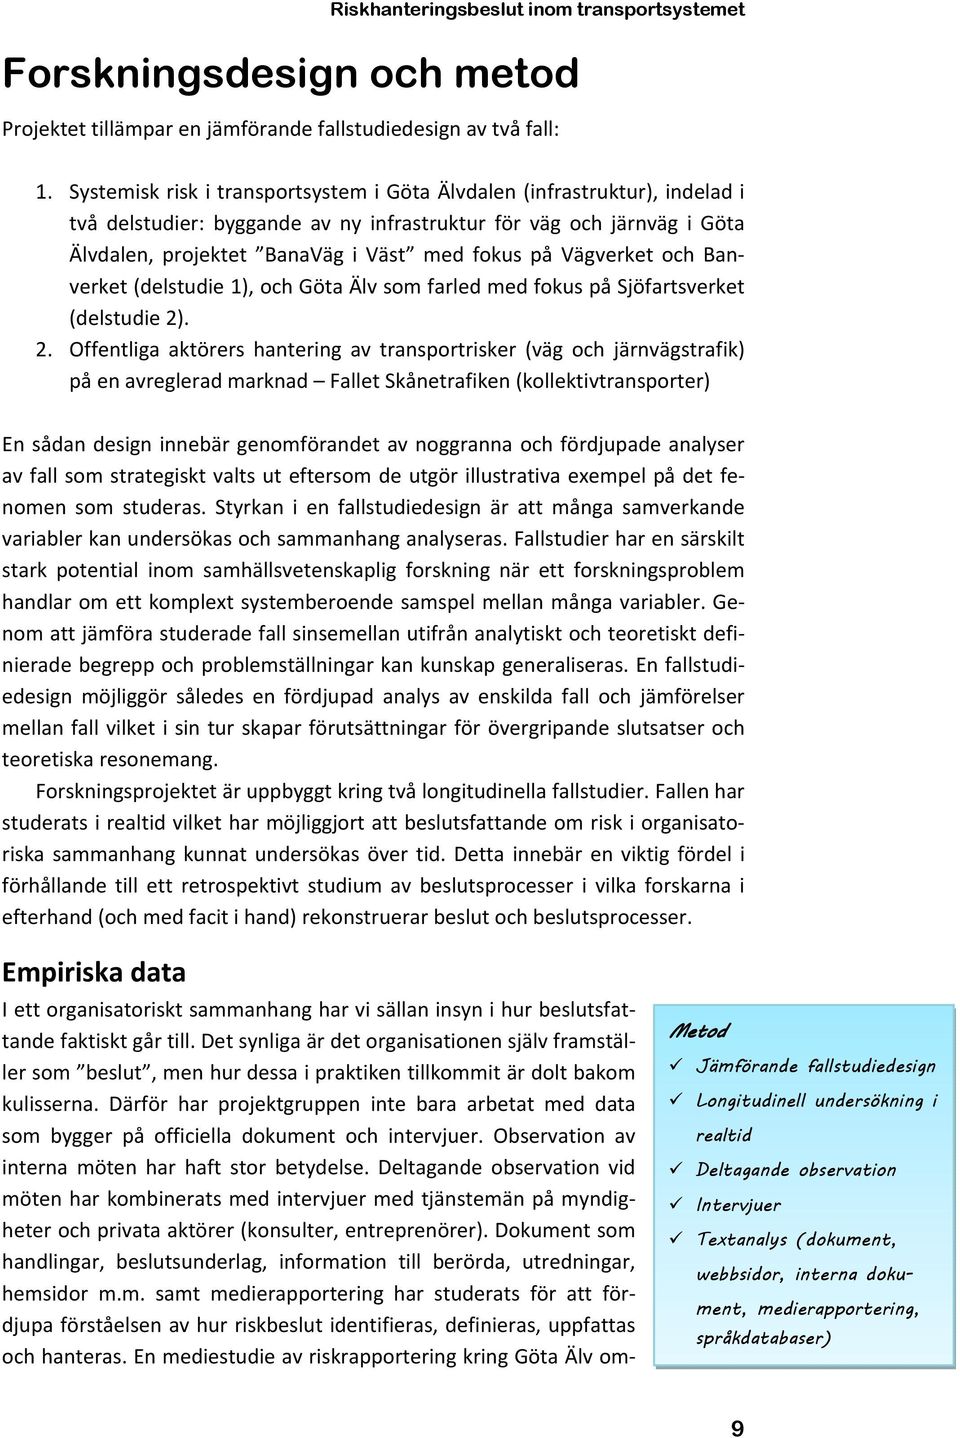 Vägverket och Banverket (delstudie 1), och Göta Älv som farled med fokus på Sjöfartsverket (delstudie 2)